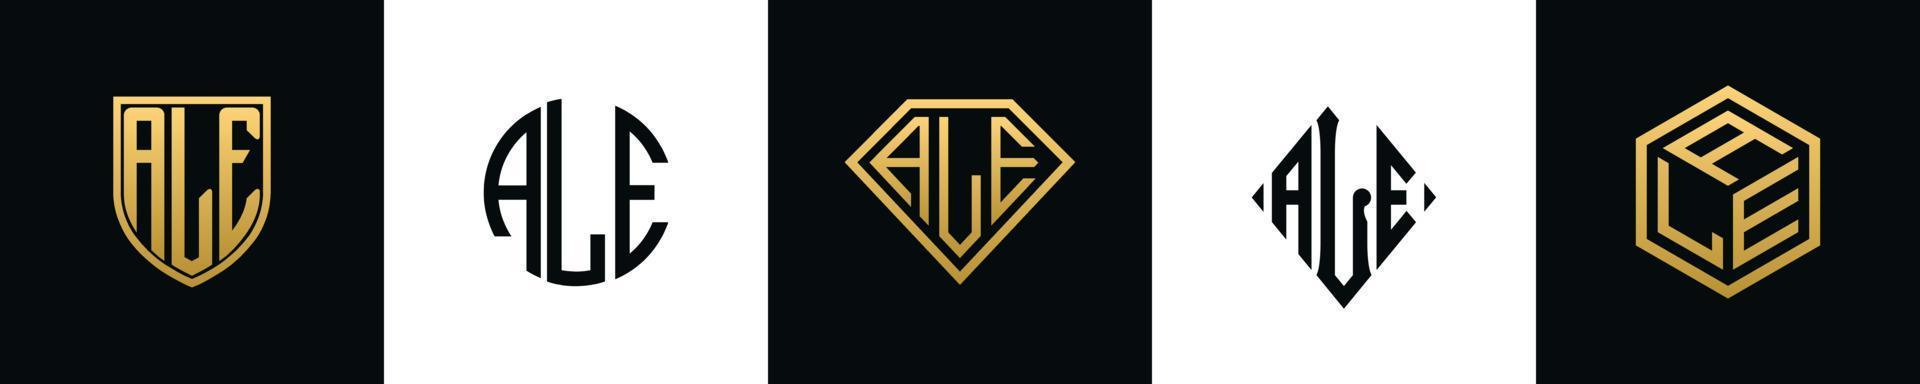 Initial letters ALE logo designs Bundle vector